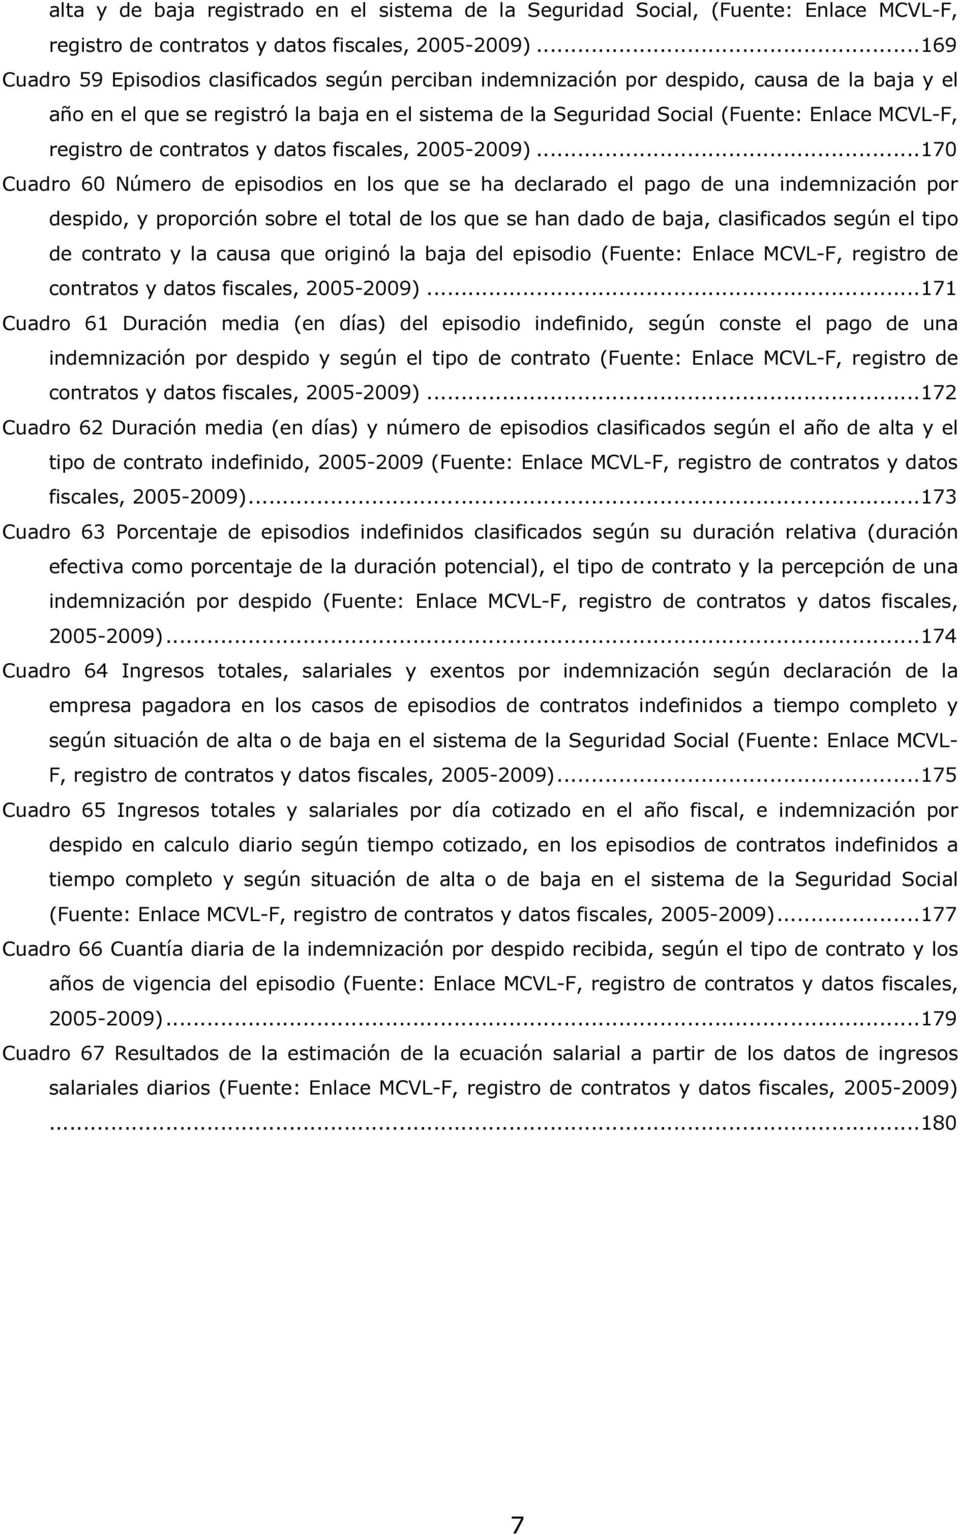 registro de contratos y datos fiscales, 2005-2009).